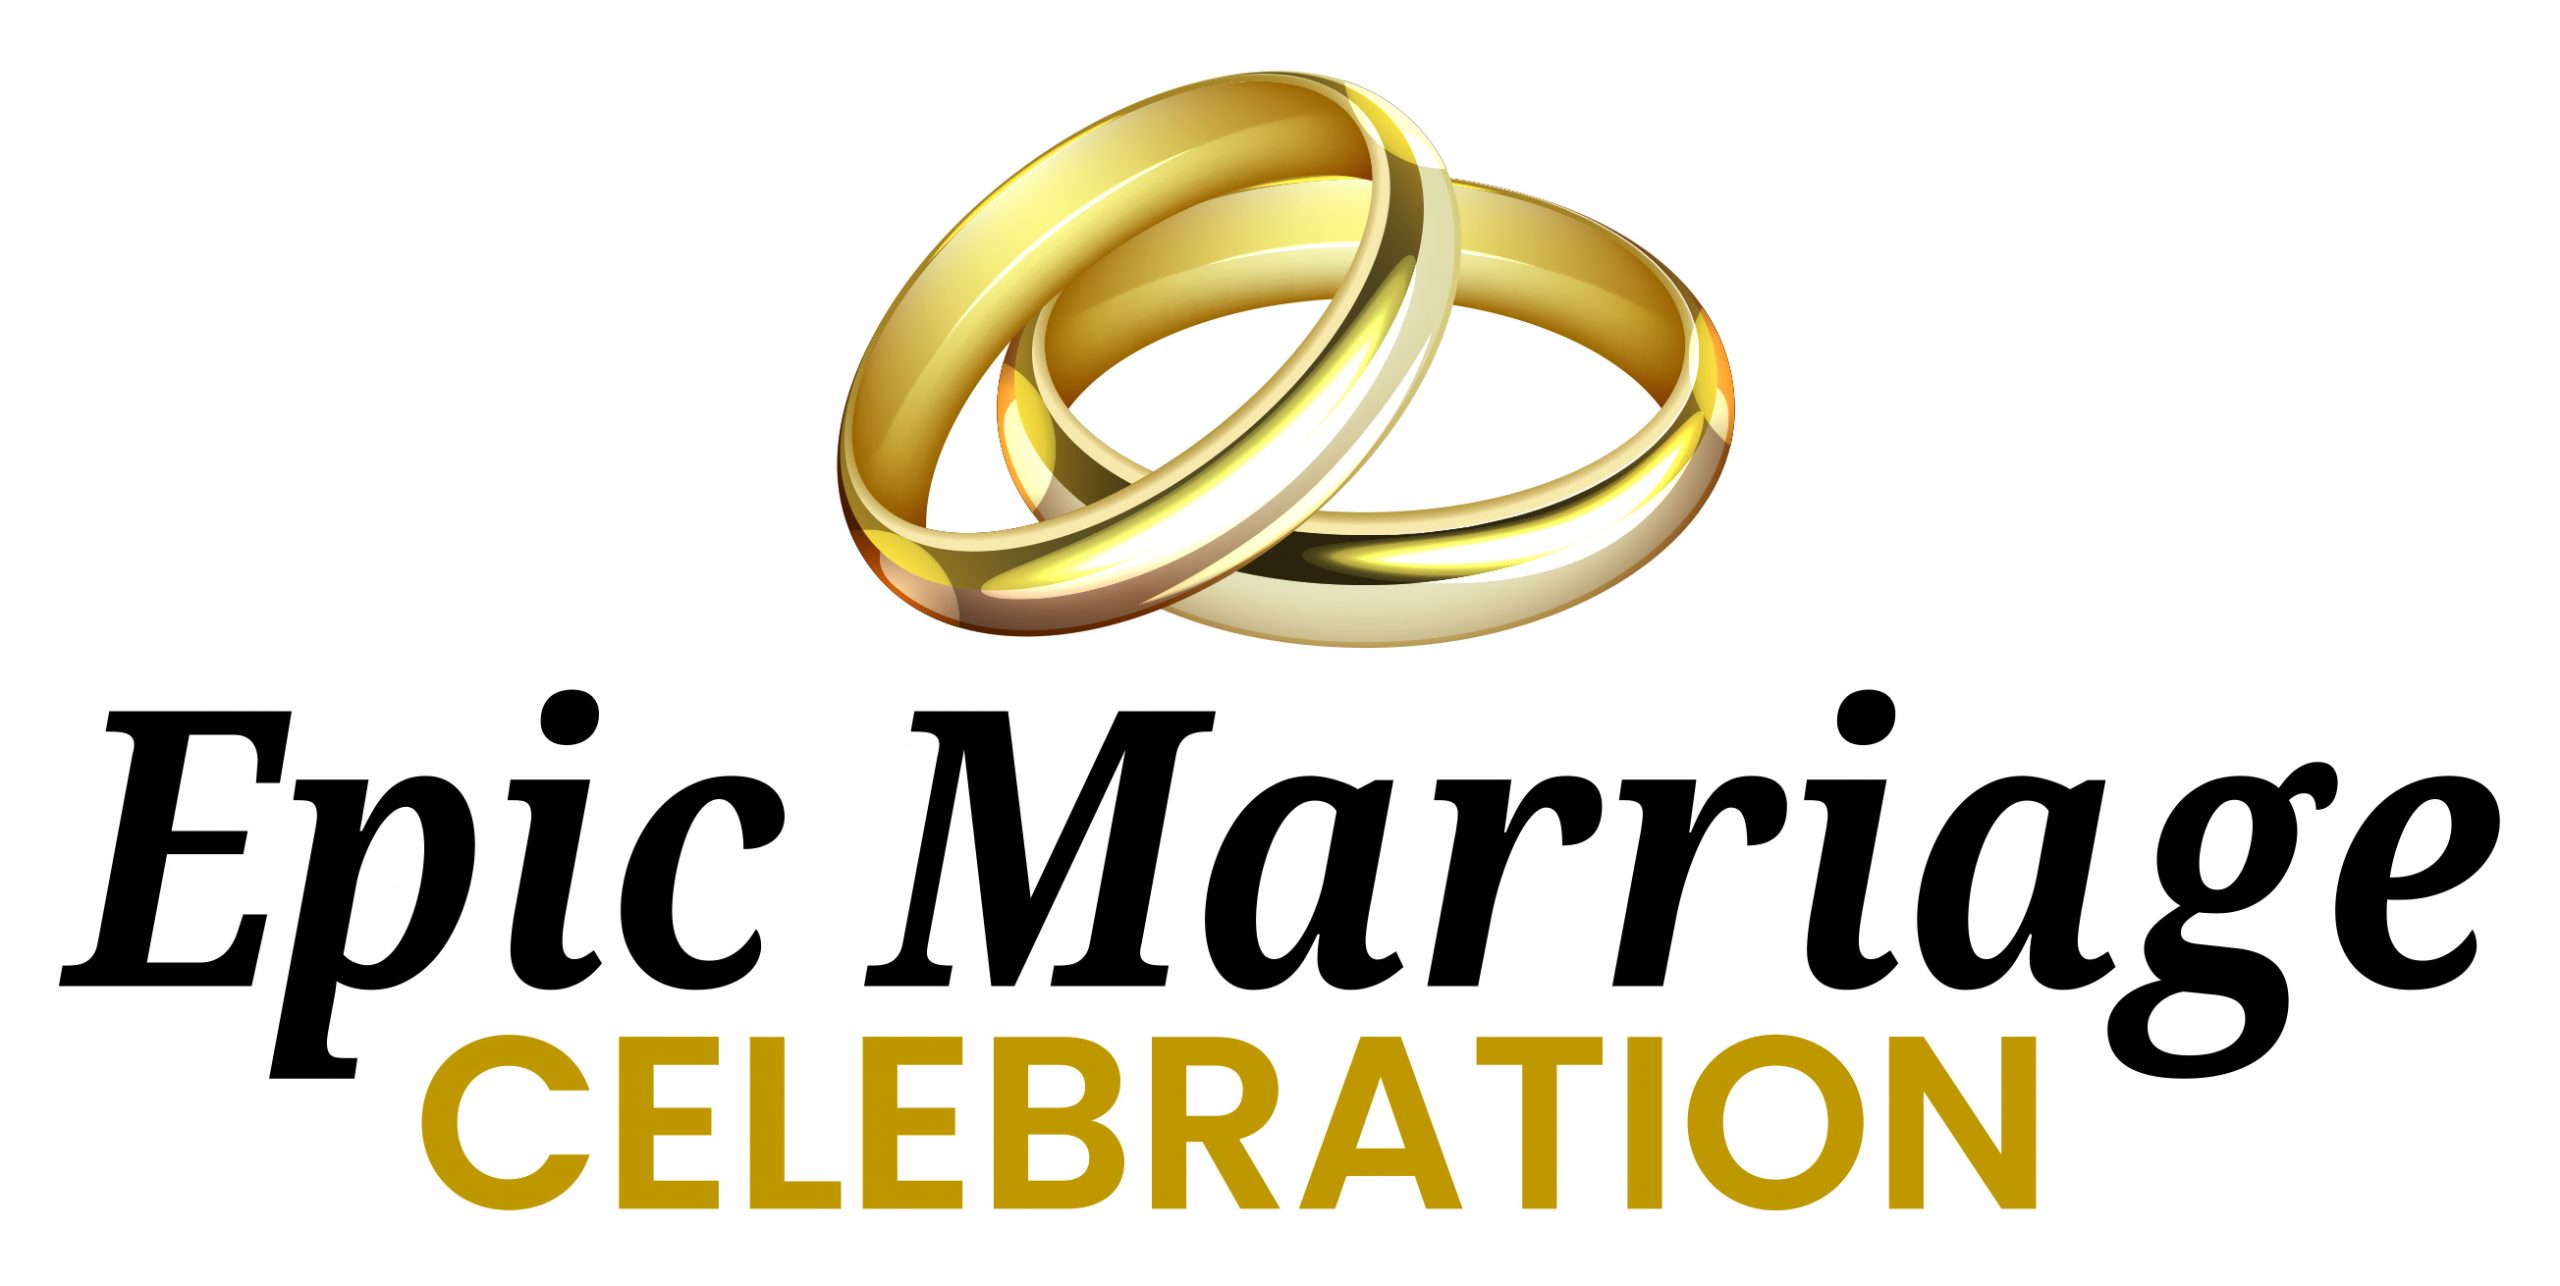 Epic Marriage Celebration LOGO